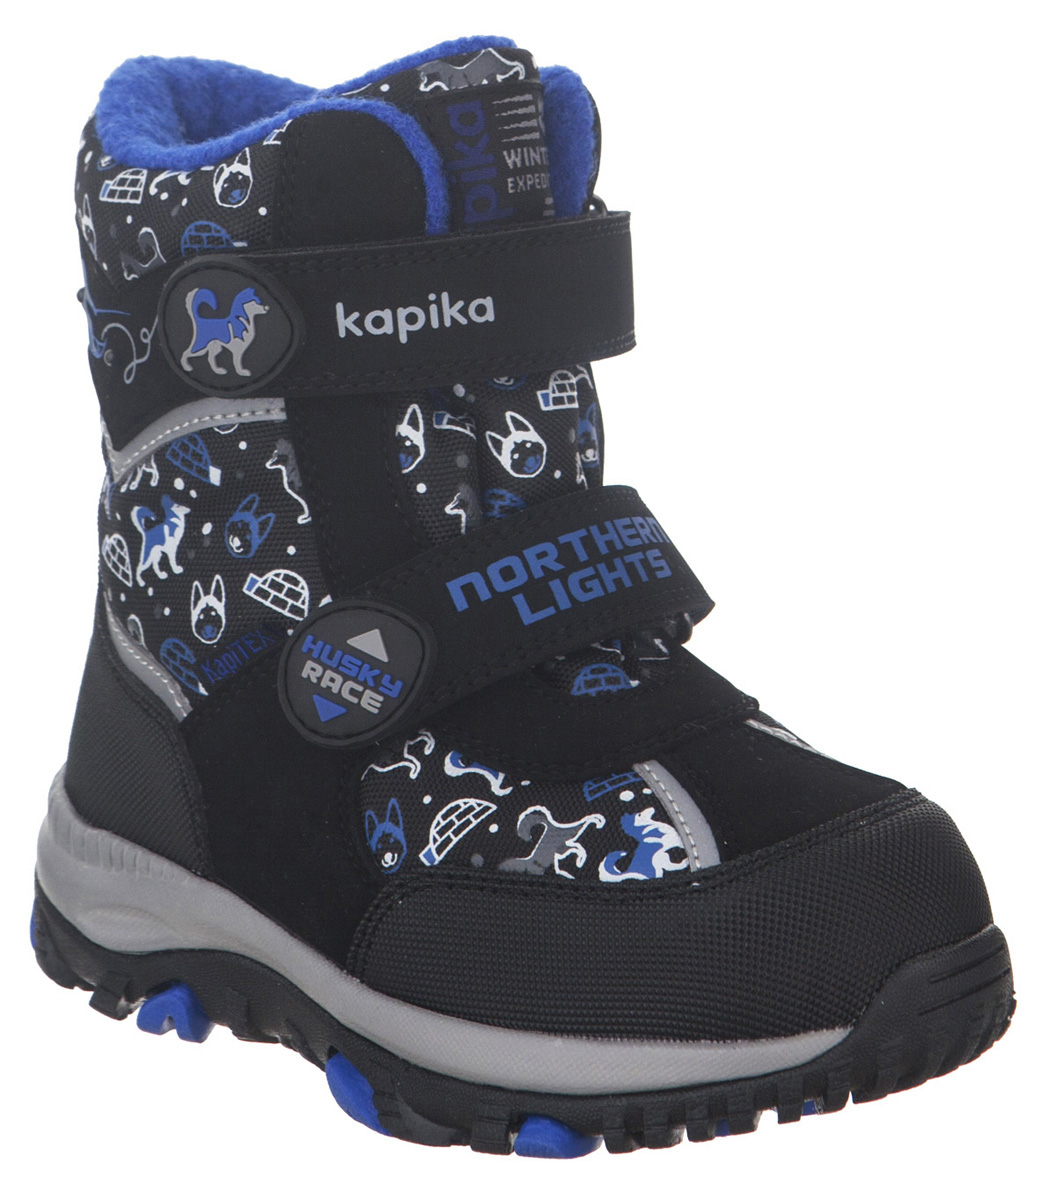 Ботинки для мальчика Kapika KapiTEX, цвет: черный. 41211-1. Размер 23